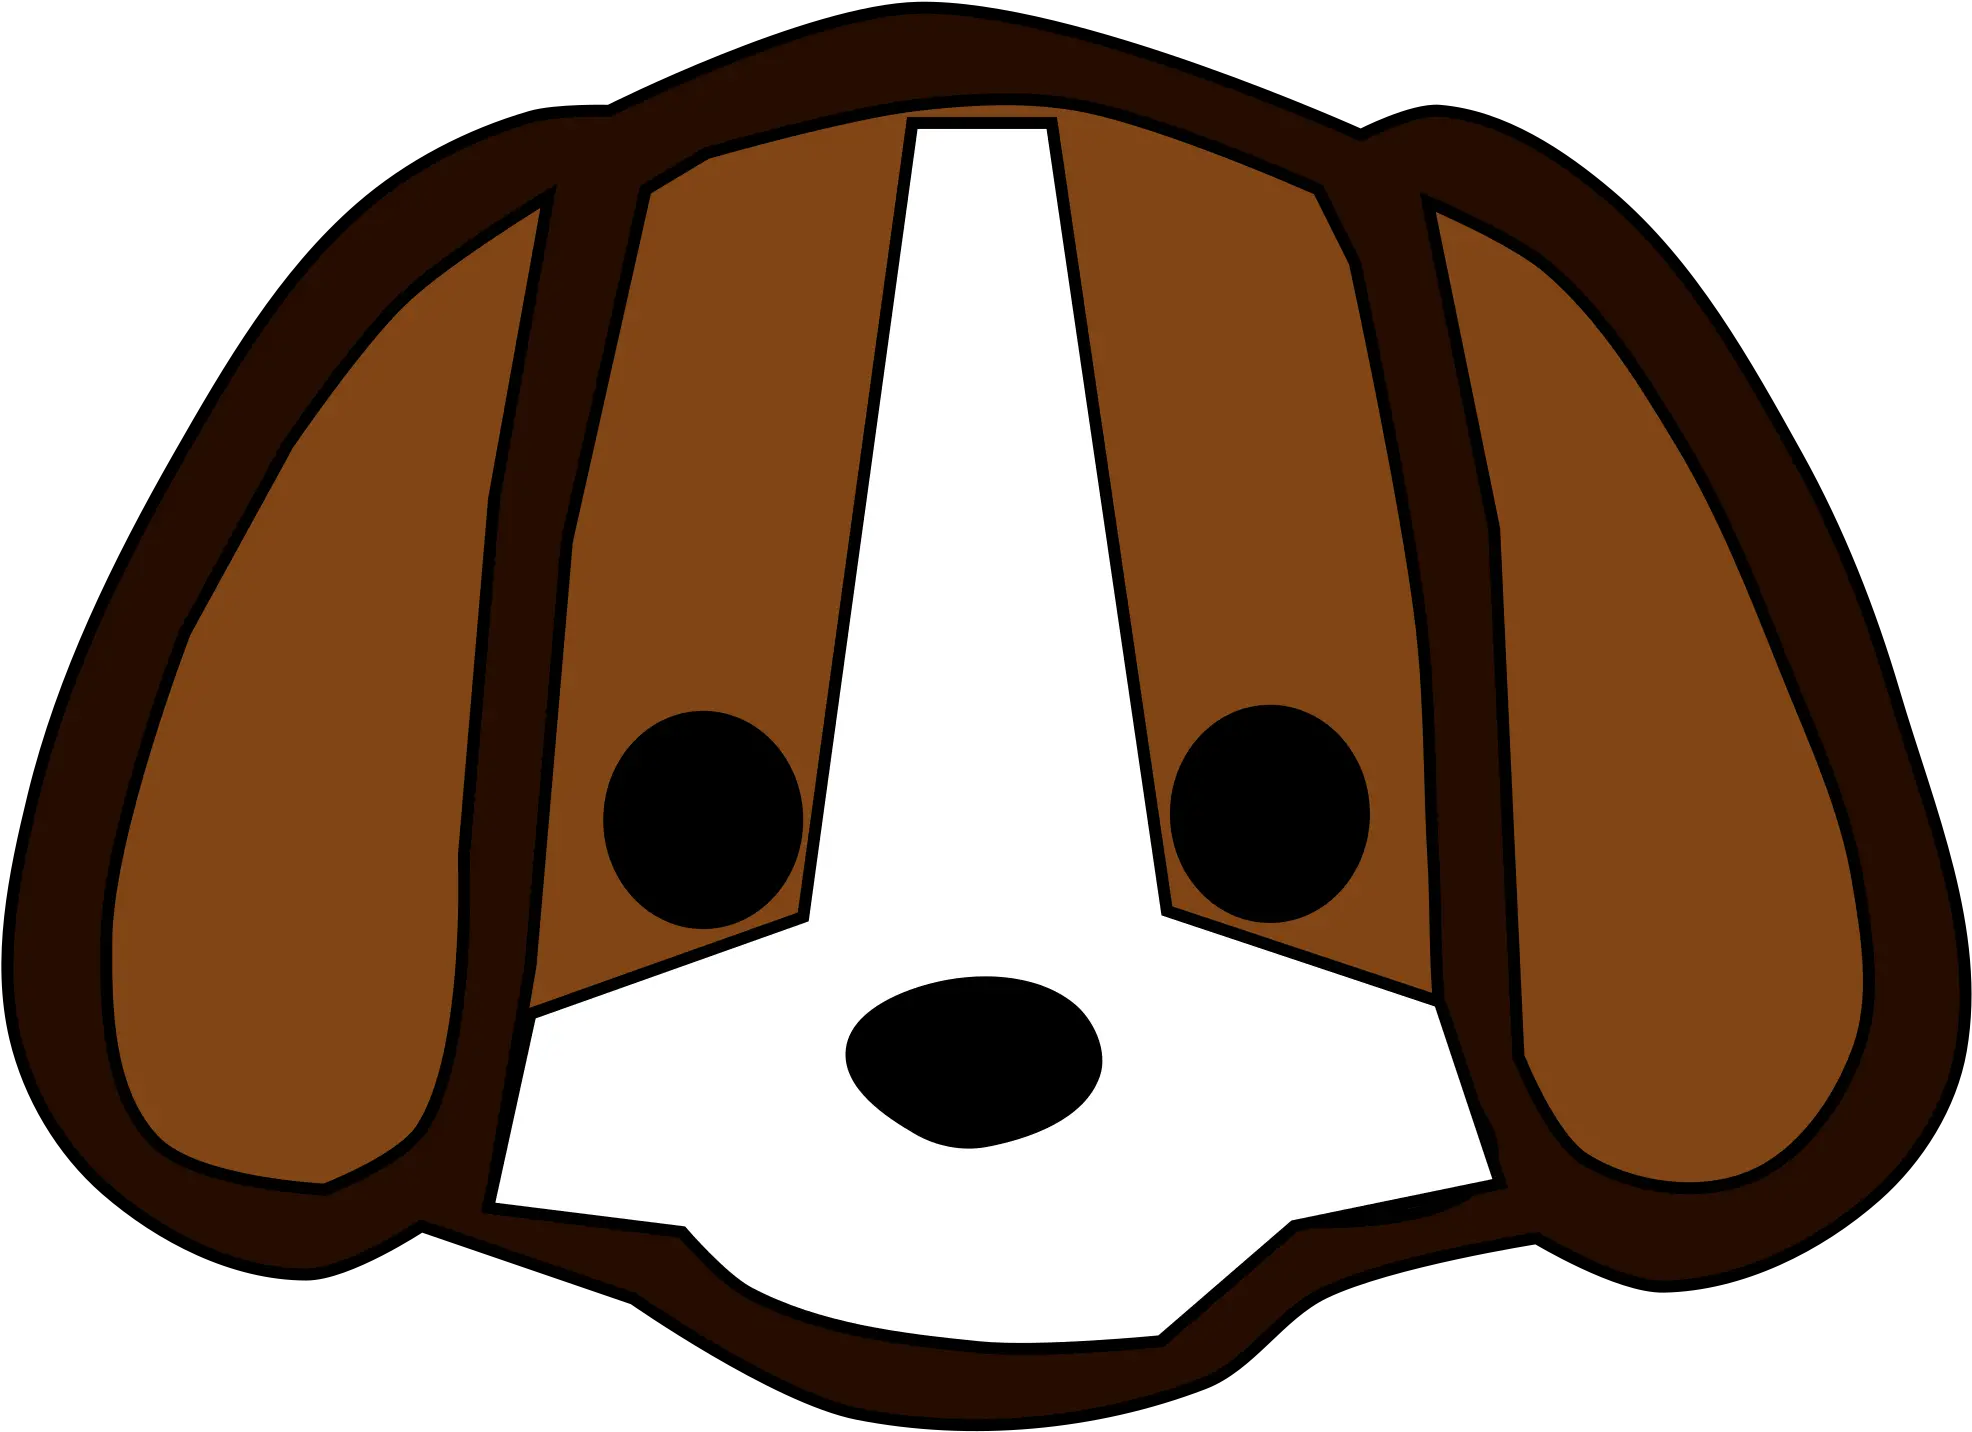 Bull Terrier Siberian Husky Pug Puppy Transparent Cartoon Dog Face Png Pug Face Png